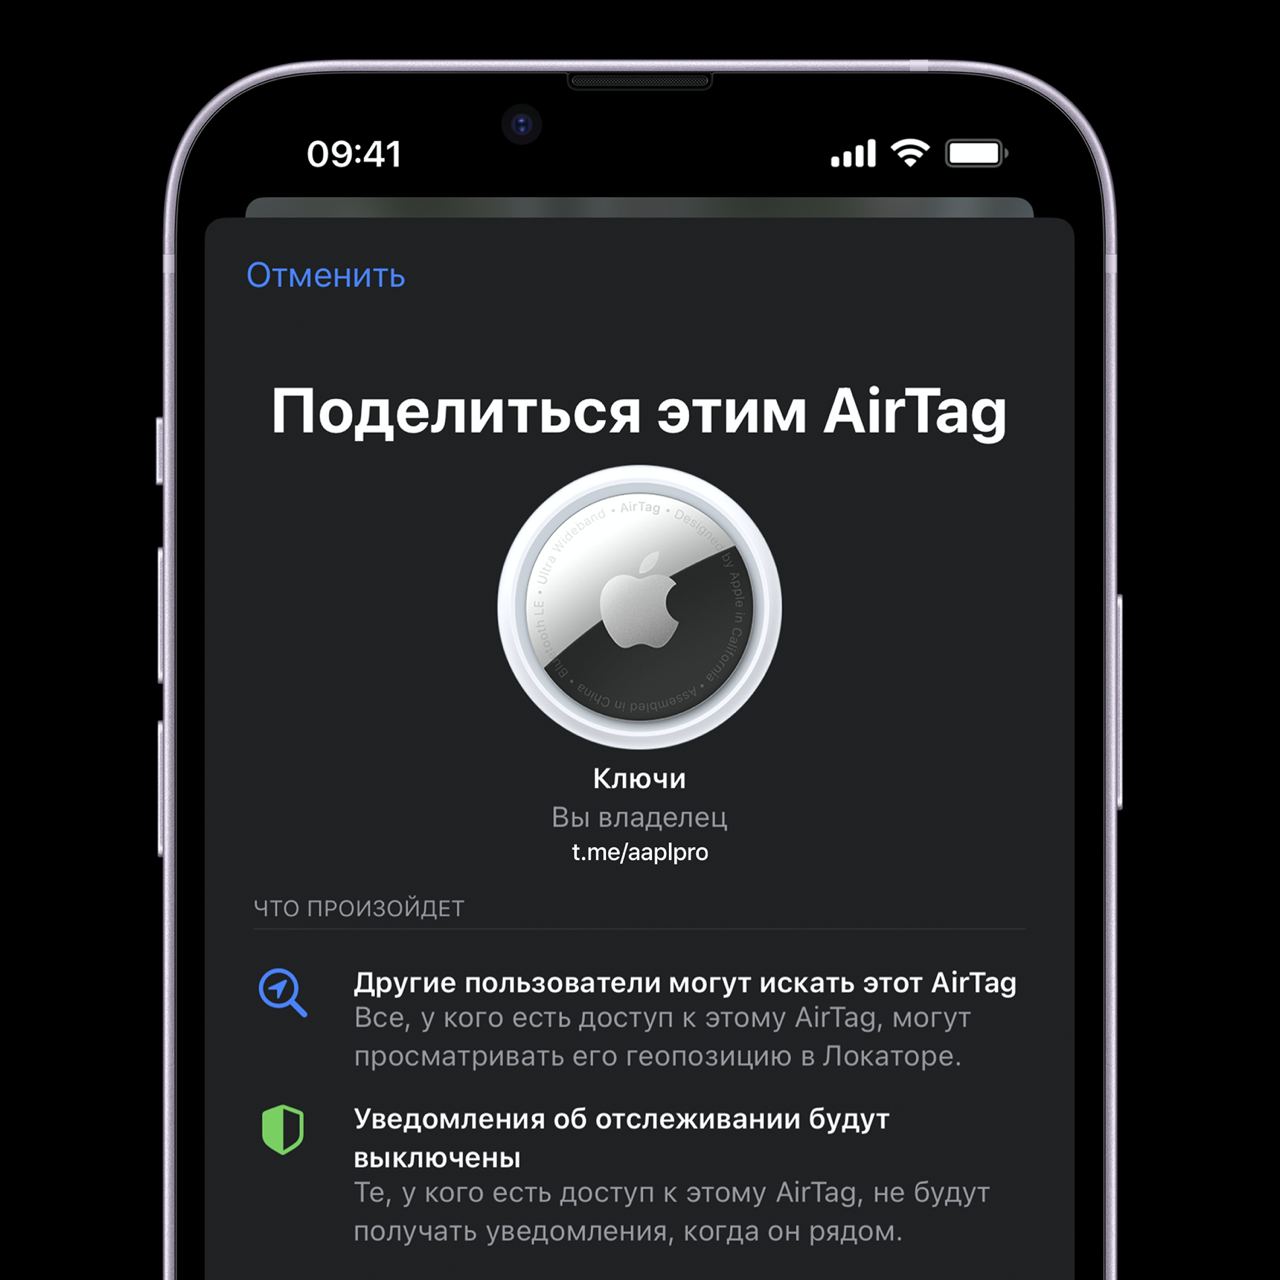 Меткой AirTag теперь можно поделиться с любыми пользователями (до 5 человек) – удобно для поиска корпоративных вещей с предоставлением доступа сотрудникам